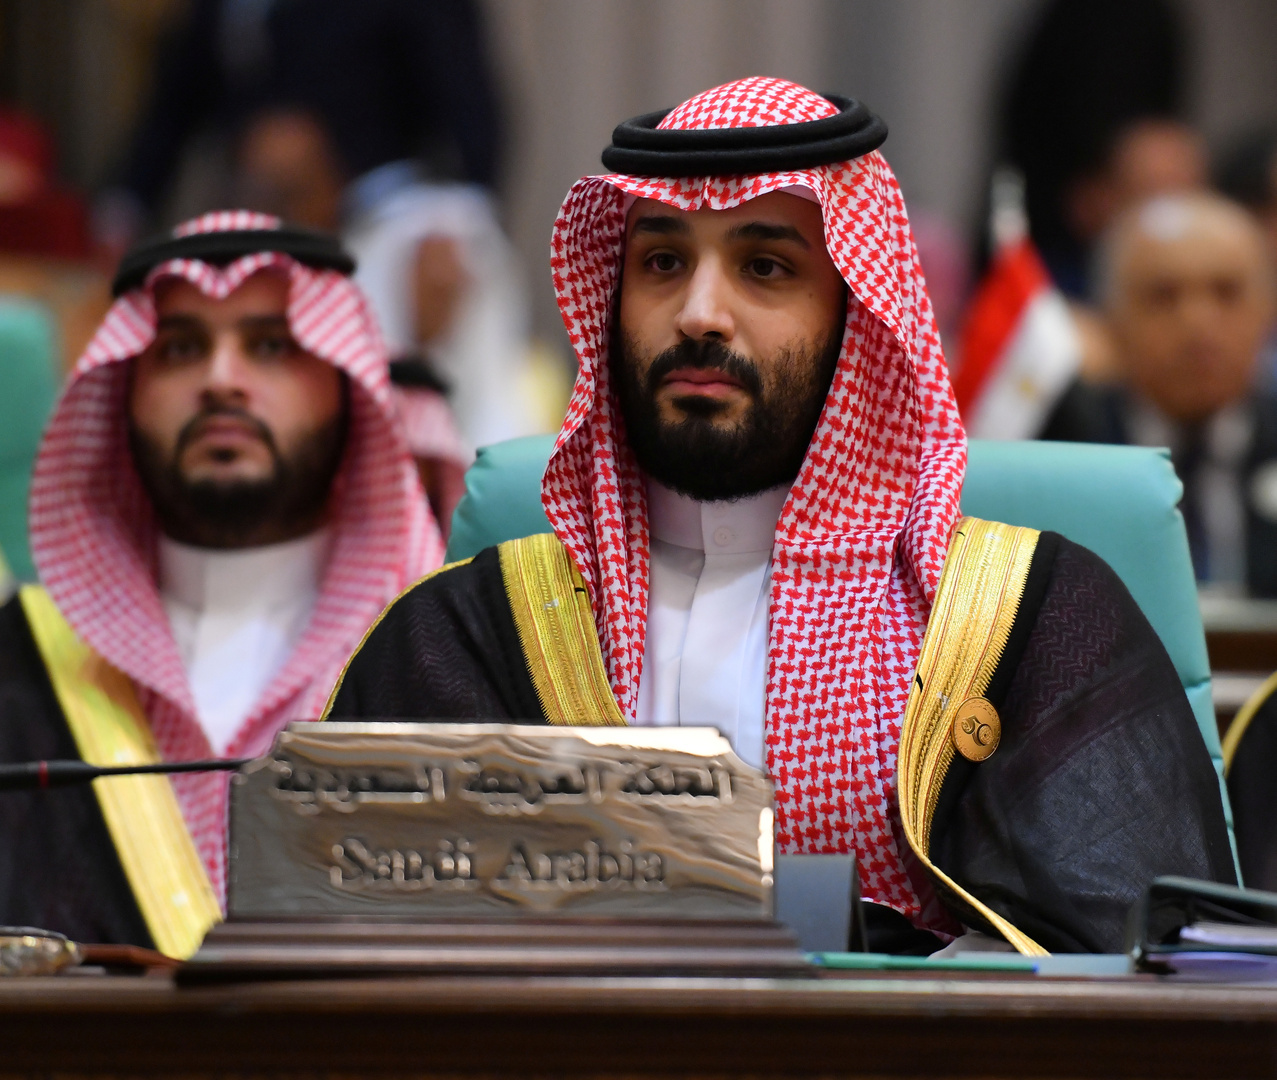 استدعاء ولي العهد السعودي محمد بن سلمان للمثول أمام محكمة أمريكية (صور)